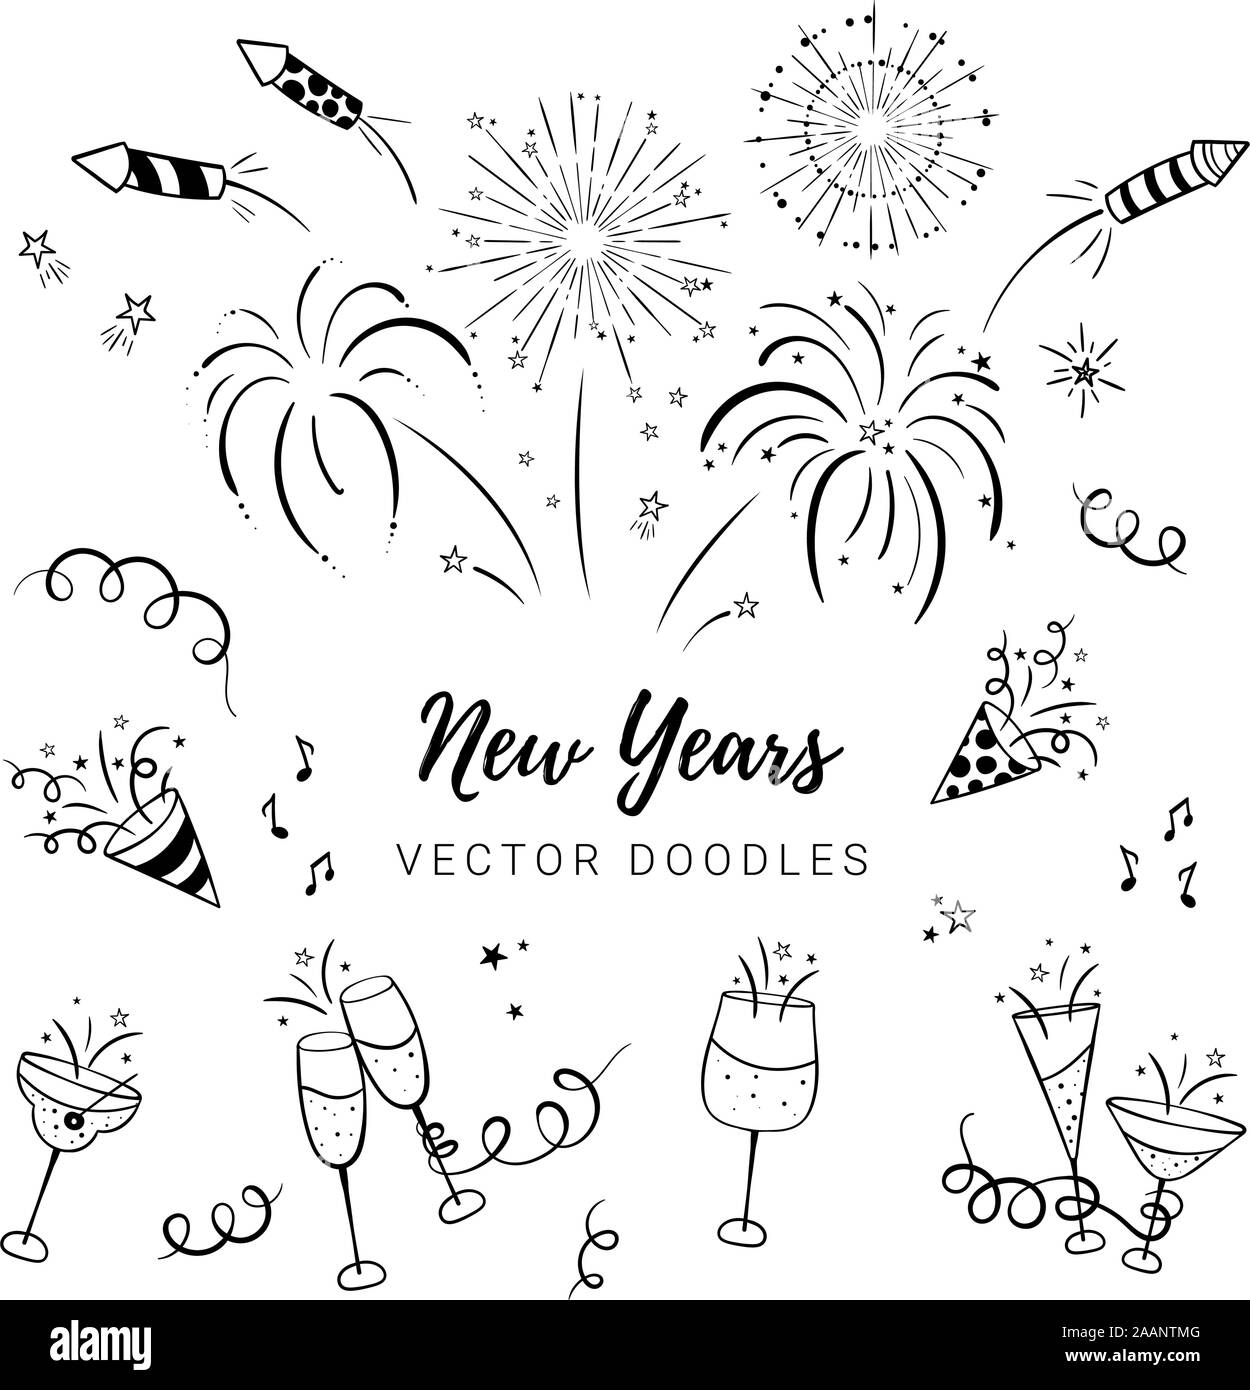 Spaß Hand gezeichnet Neue Jahre Partei doodles - Feuerwerk, Papier Streamer, Cocktails und Raketen, ideal für Banner, Tapeten, Textilien, Verpackung Stock Vektor